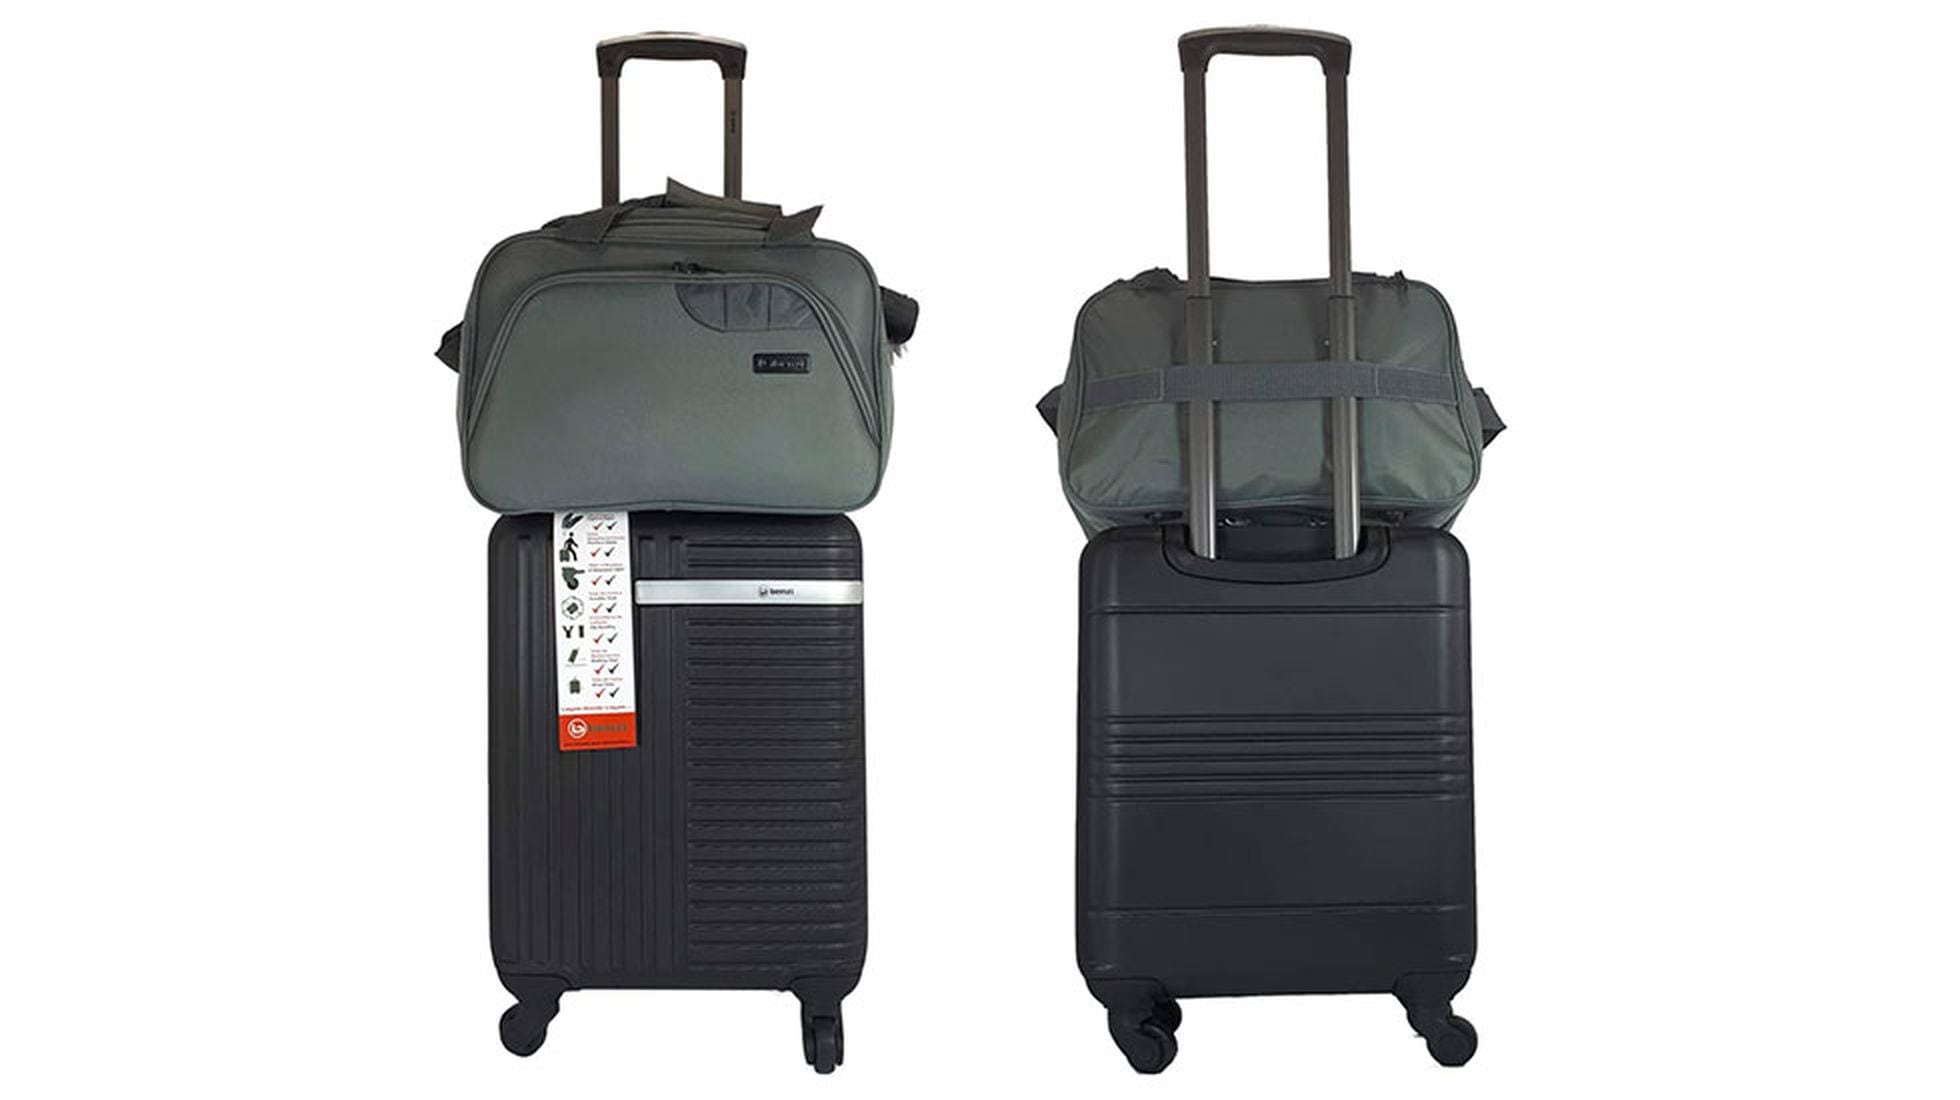 Cabina de duro 55cm de Ryanair aprobado Equipaje de Mano Trolley Bolsa caso maleta de equipaje de mano 